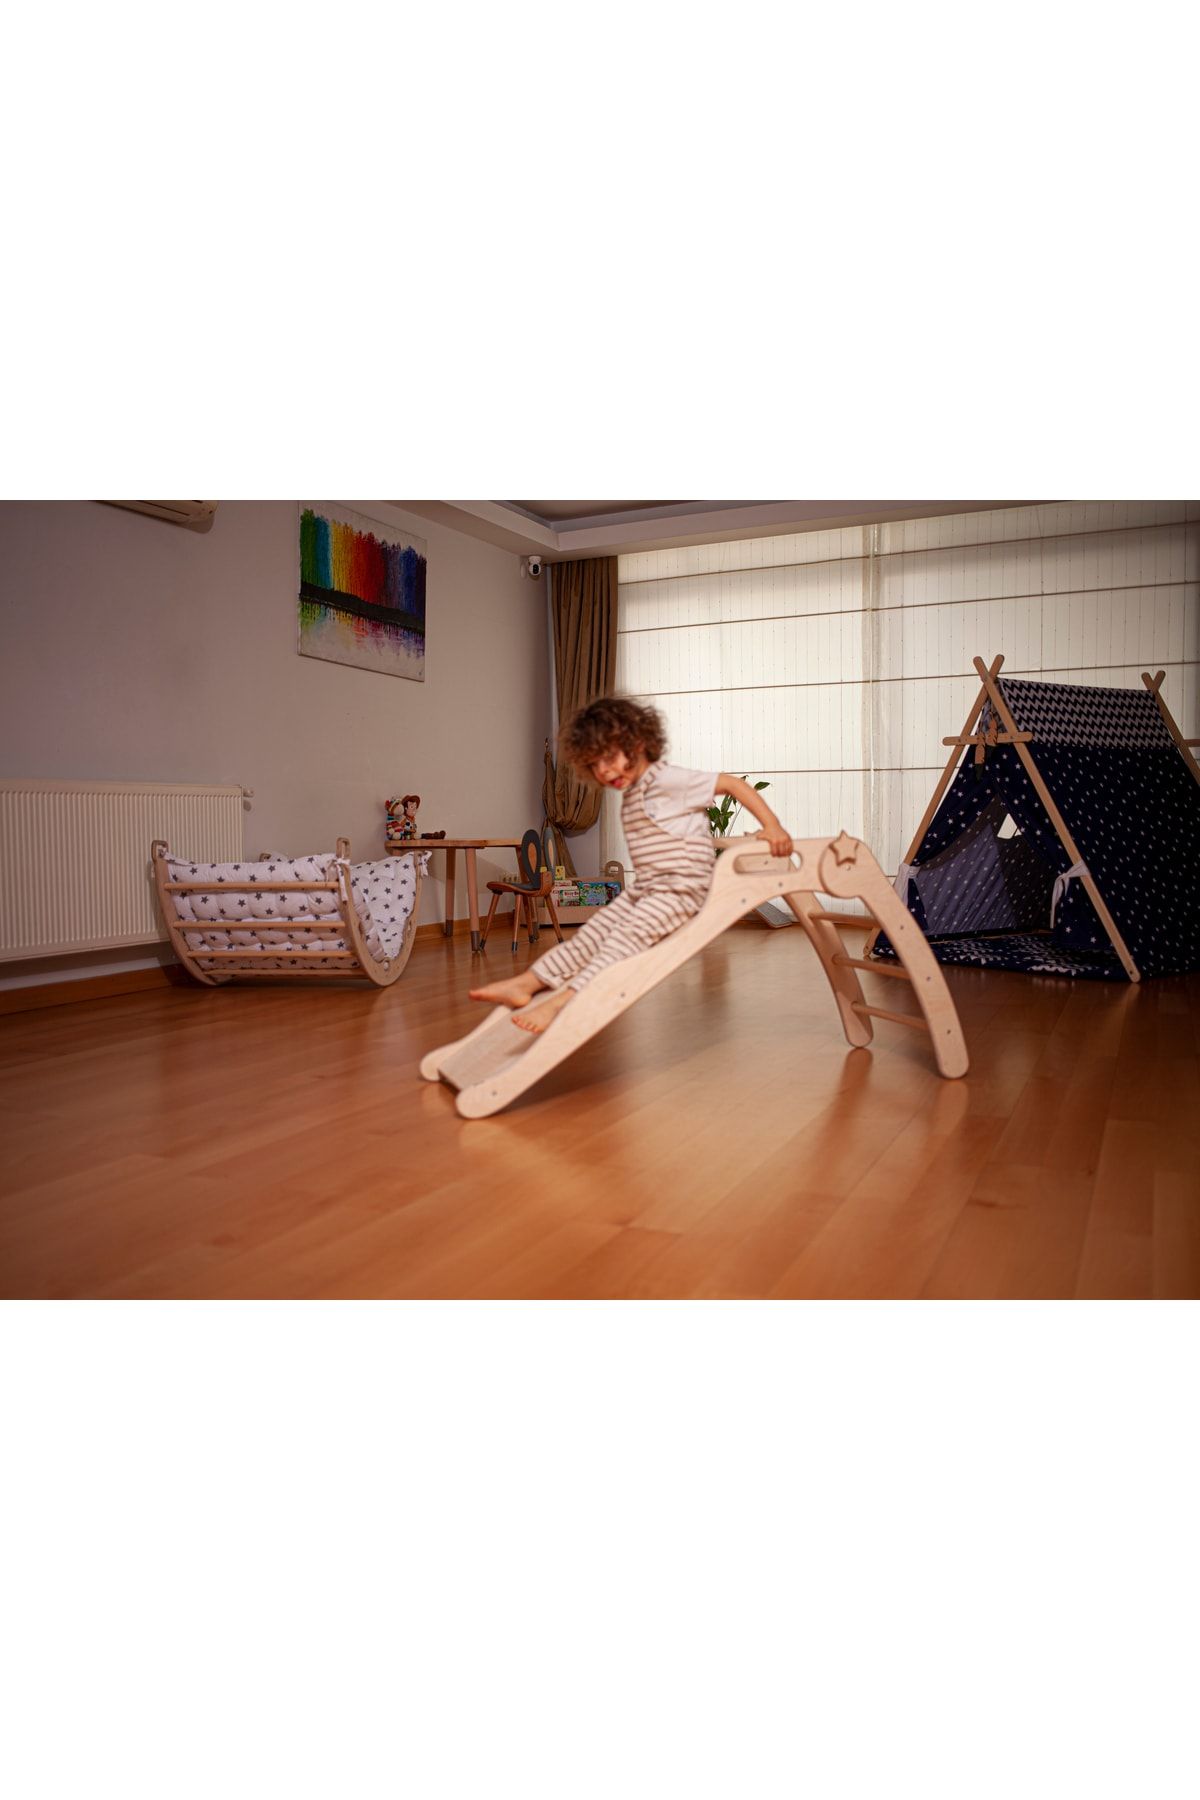 KIDOPPO Pikler Kaydırak Montessori Ahşap Oyuncak | 3 Basamaklı Eğlence Kaydırağı | Çocuk Odası Için Kaydırak